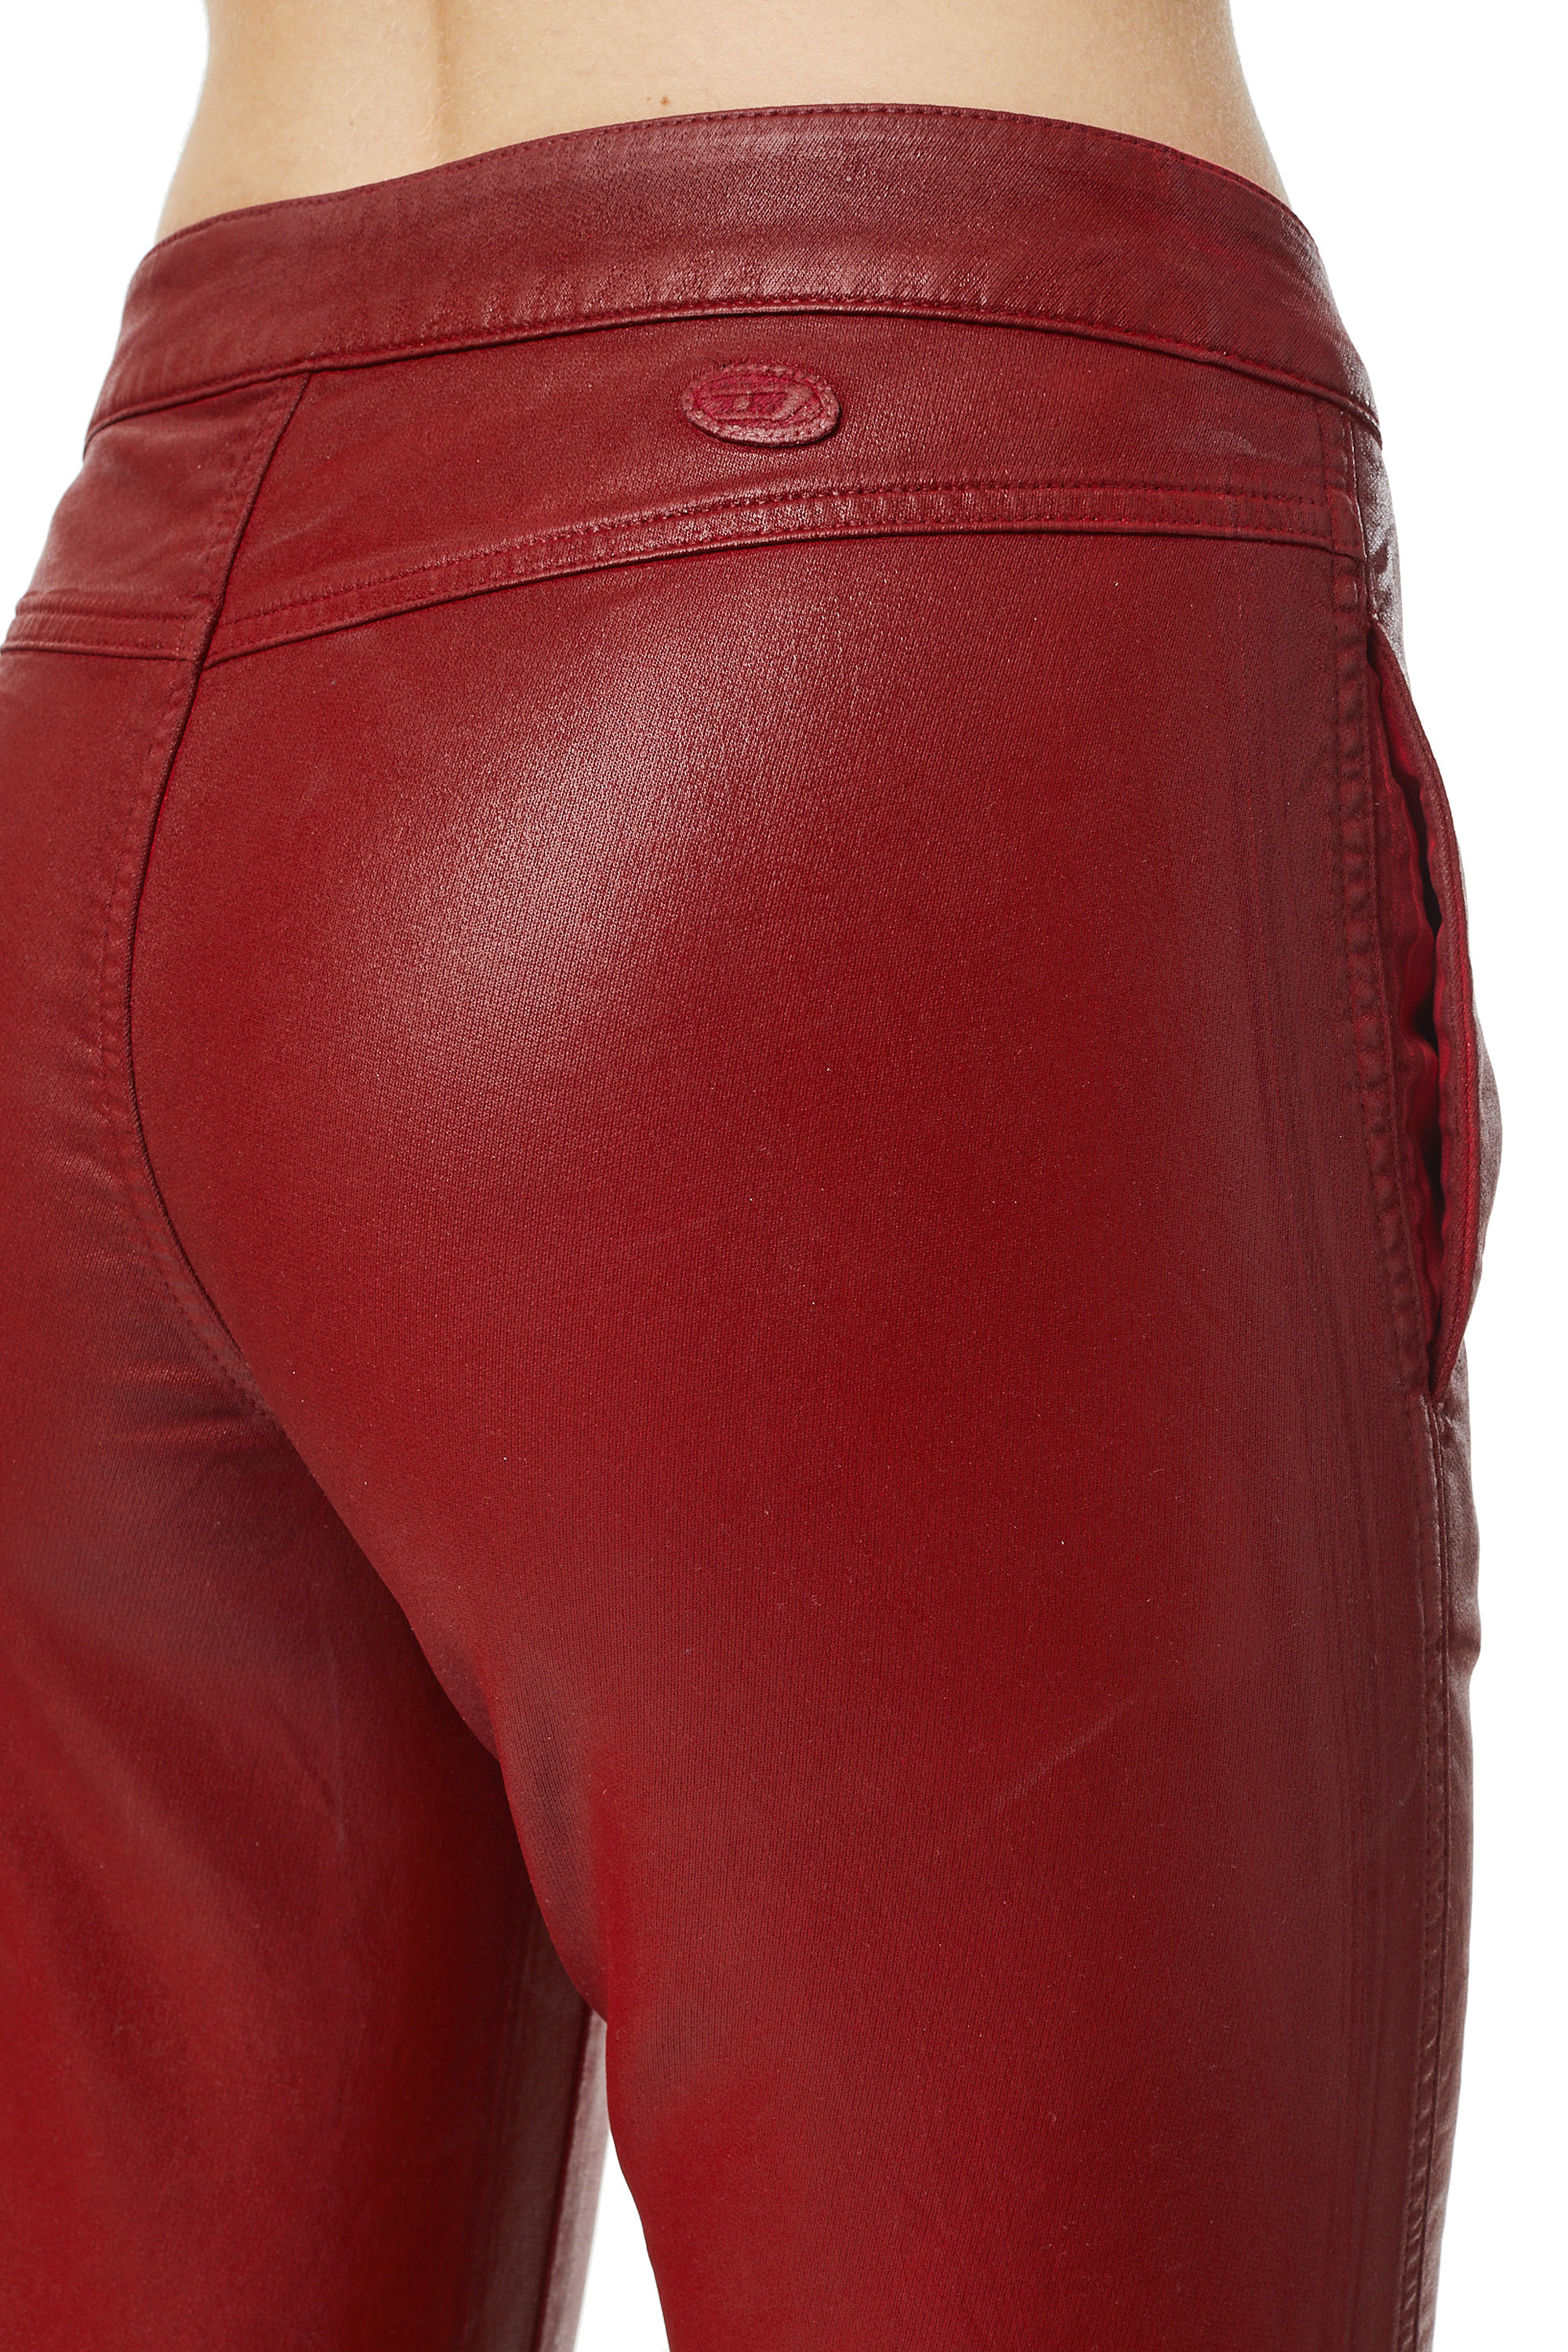 Diesel - BABHILA JoggJeans® 069YV Skinny, Rojo - Image 3